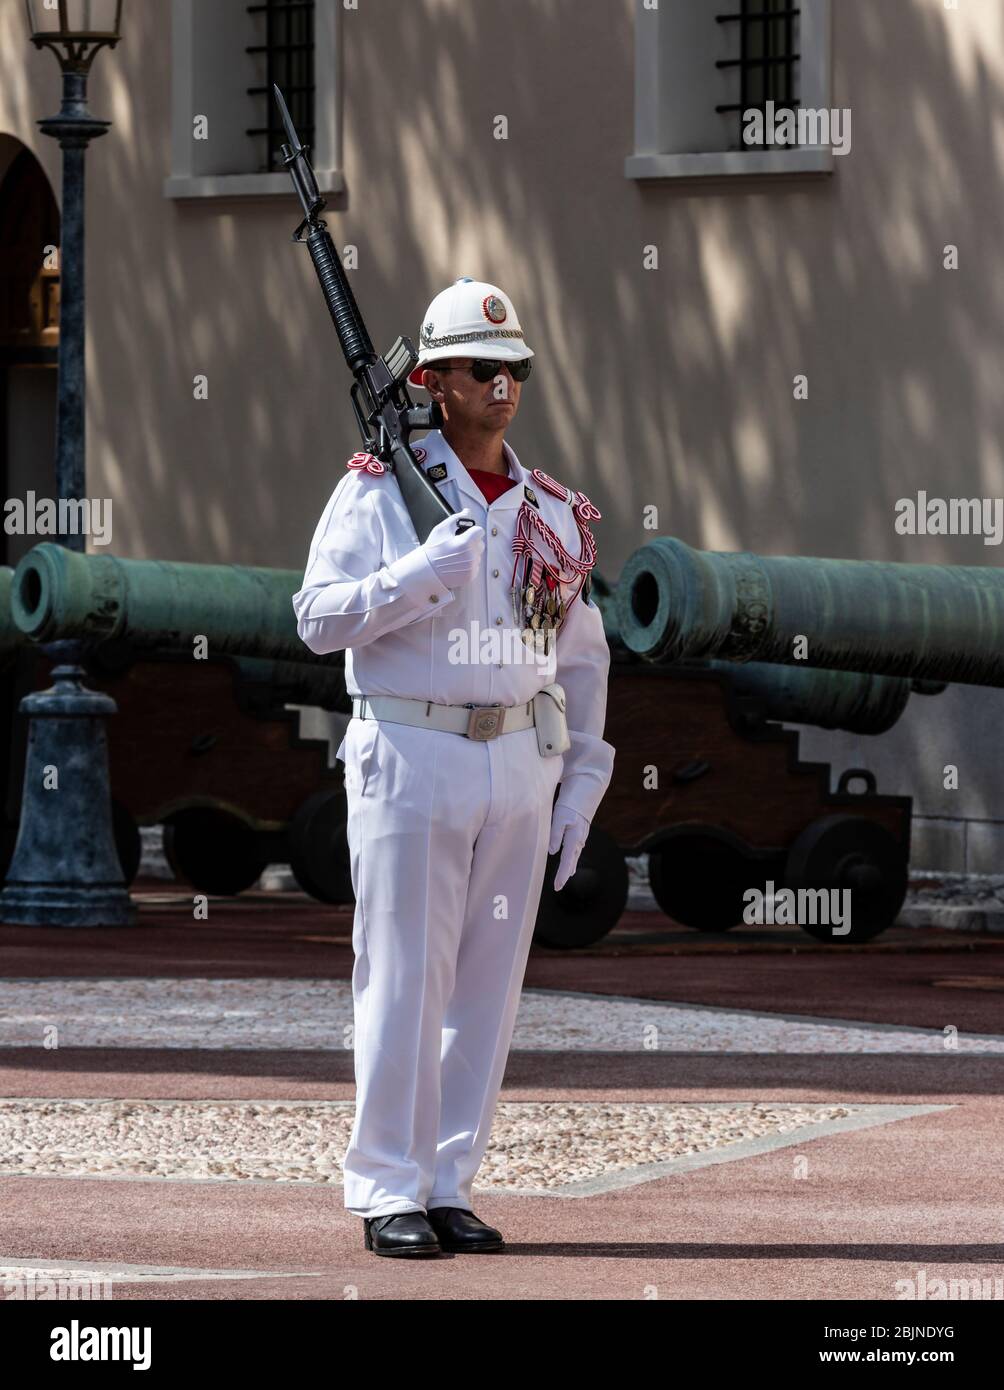 Guardia cerimoniale militare sulla pattuglia, Palazzo del Principe, Principato di Monaco. Foto Stock